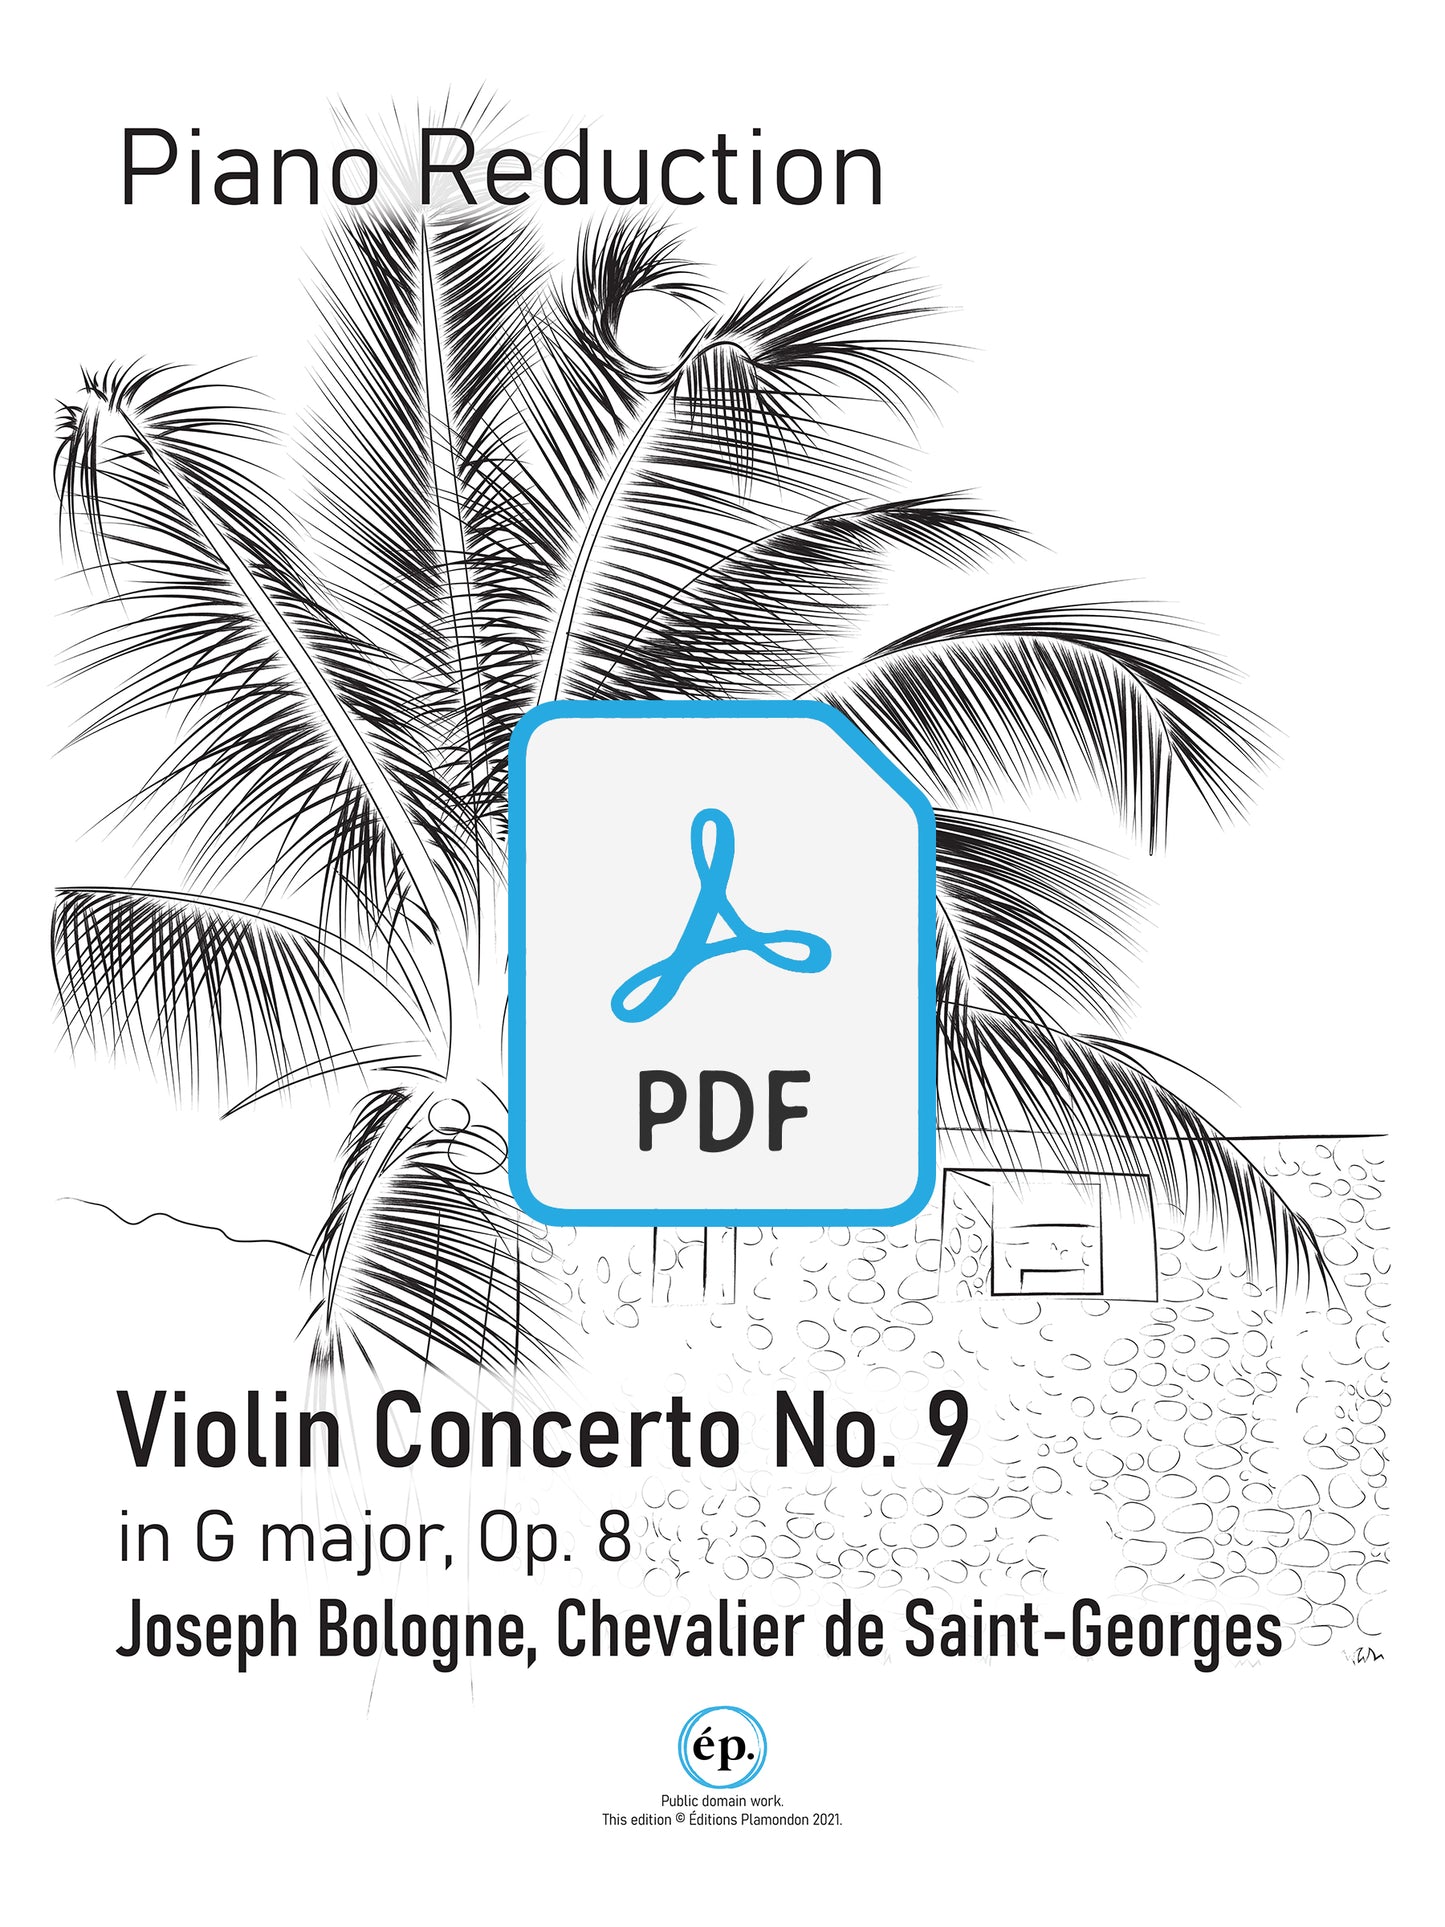 Chevalier de Saint-Georges Violin Concerto No. 9 in G major, op. 8